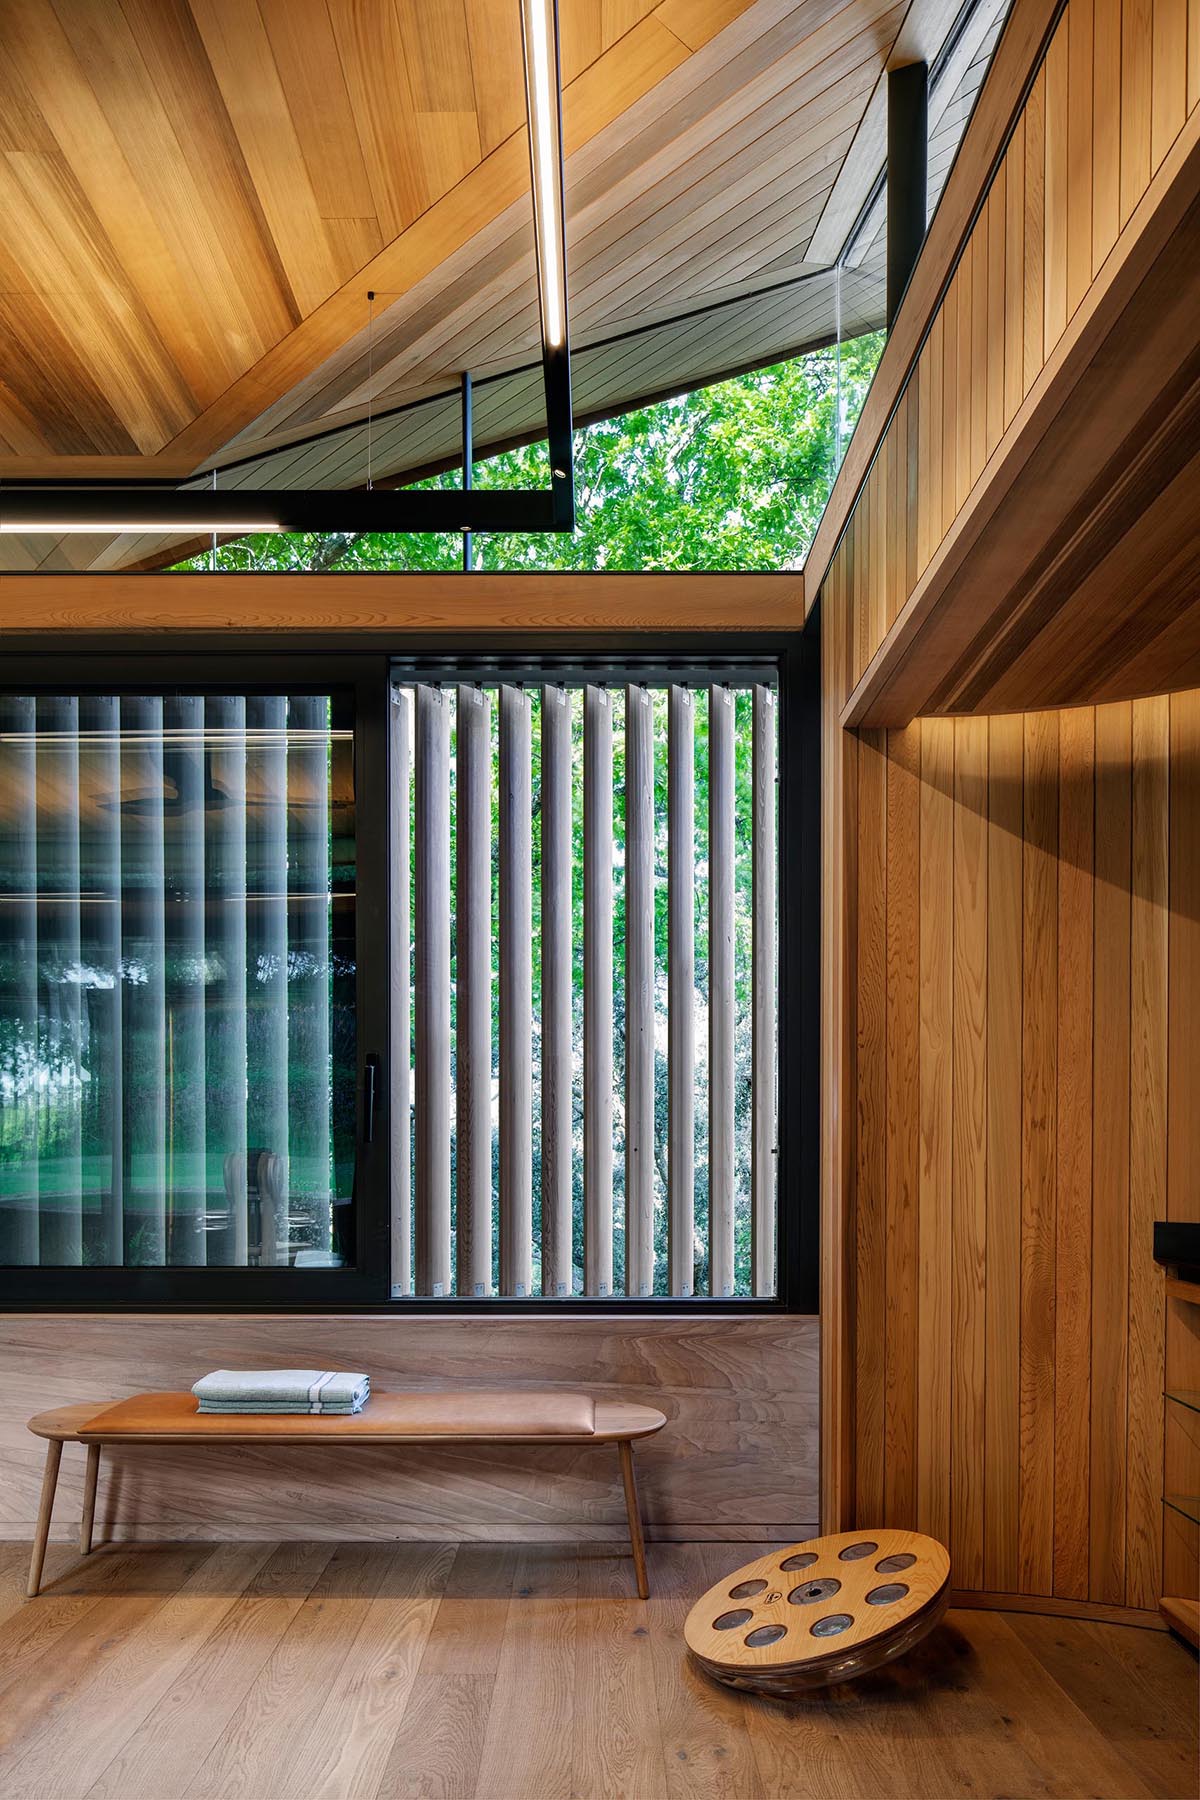 Домашний тренажерный зал с деревянными перегородками из аэро-фольги, которые при необходимости обеспечивают конфиденциальность.